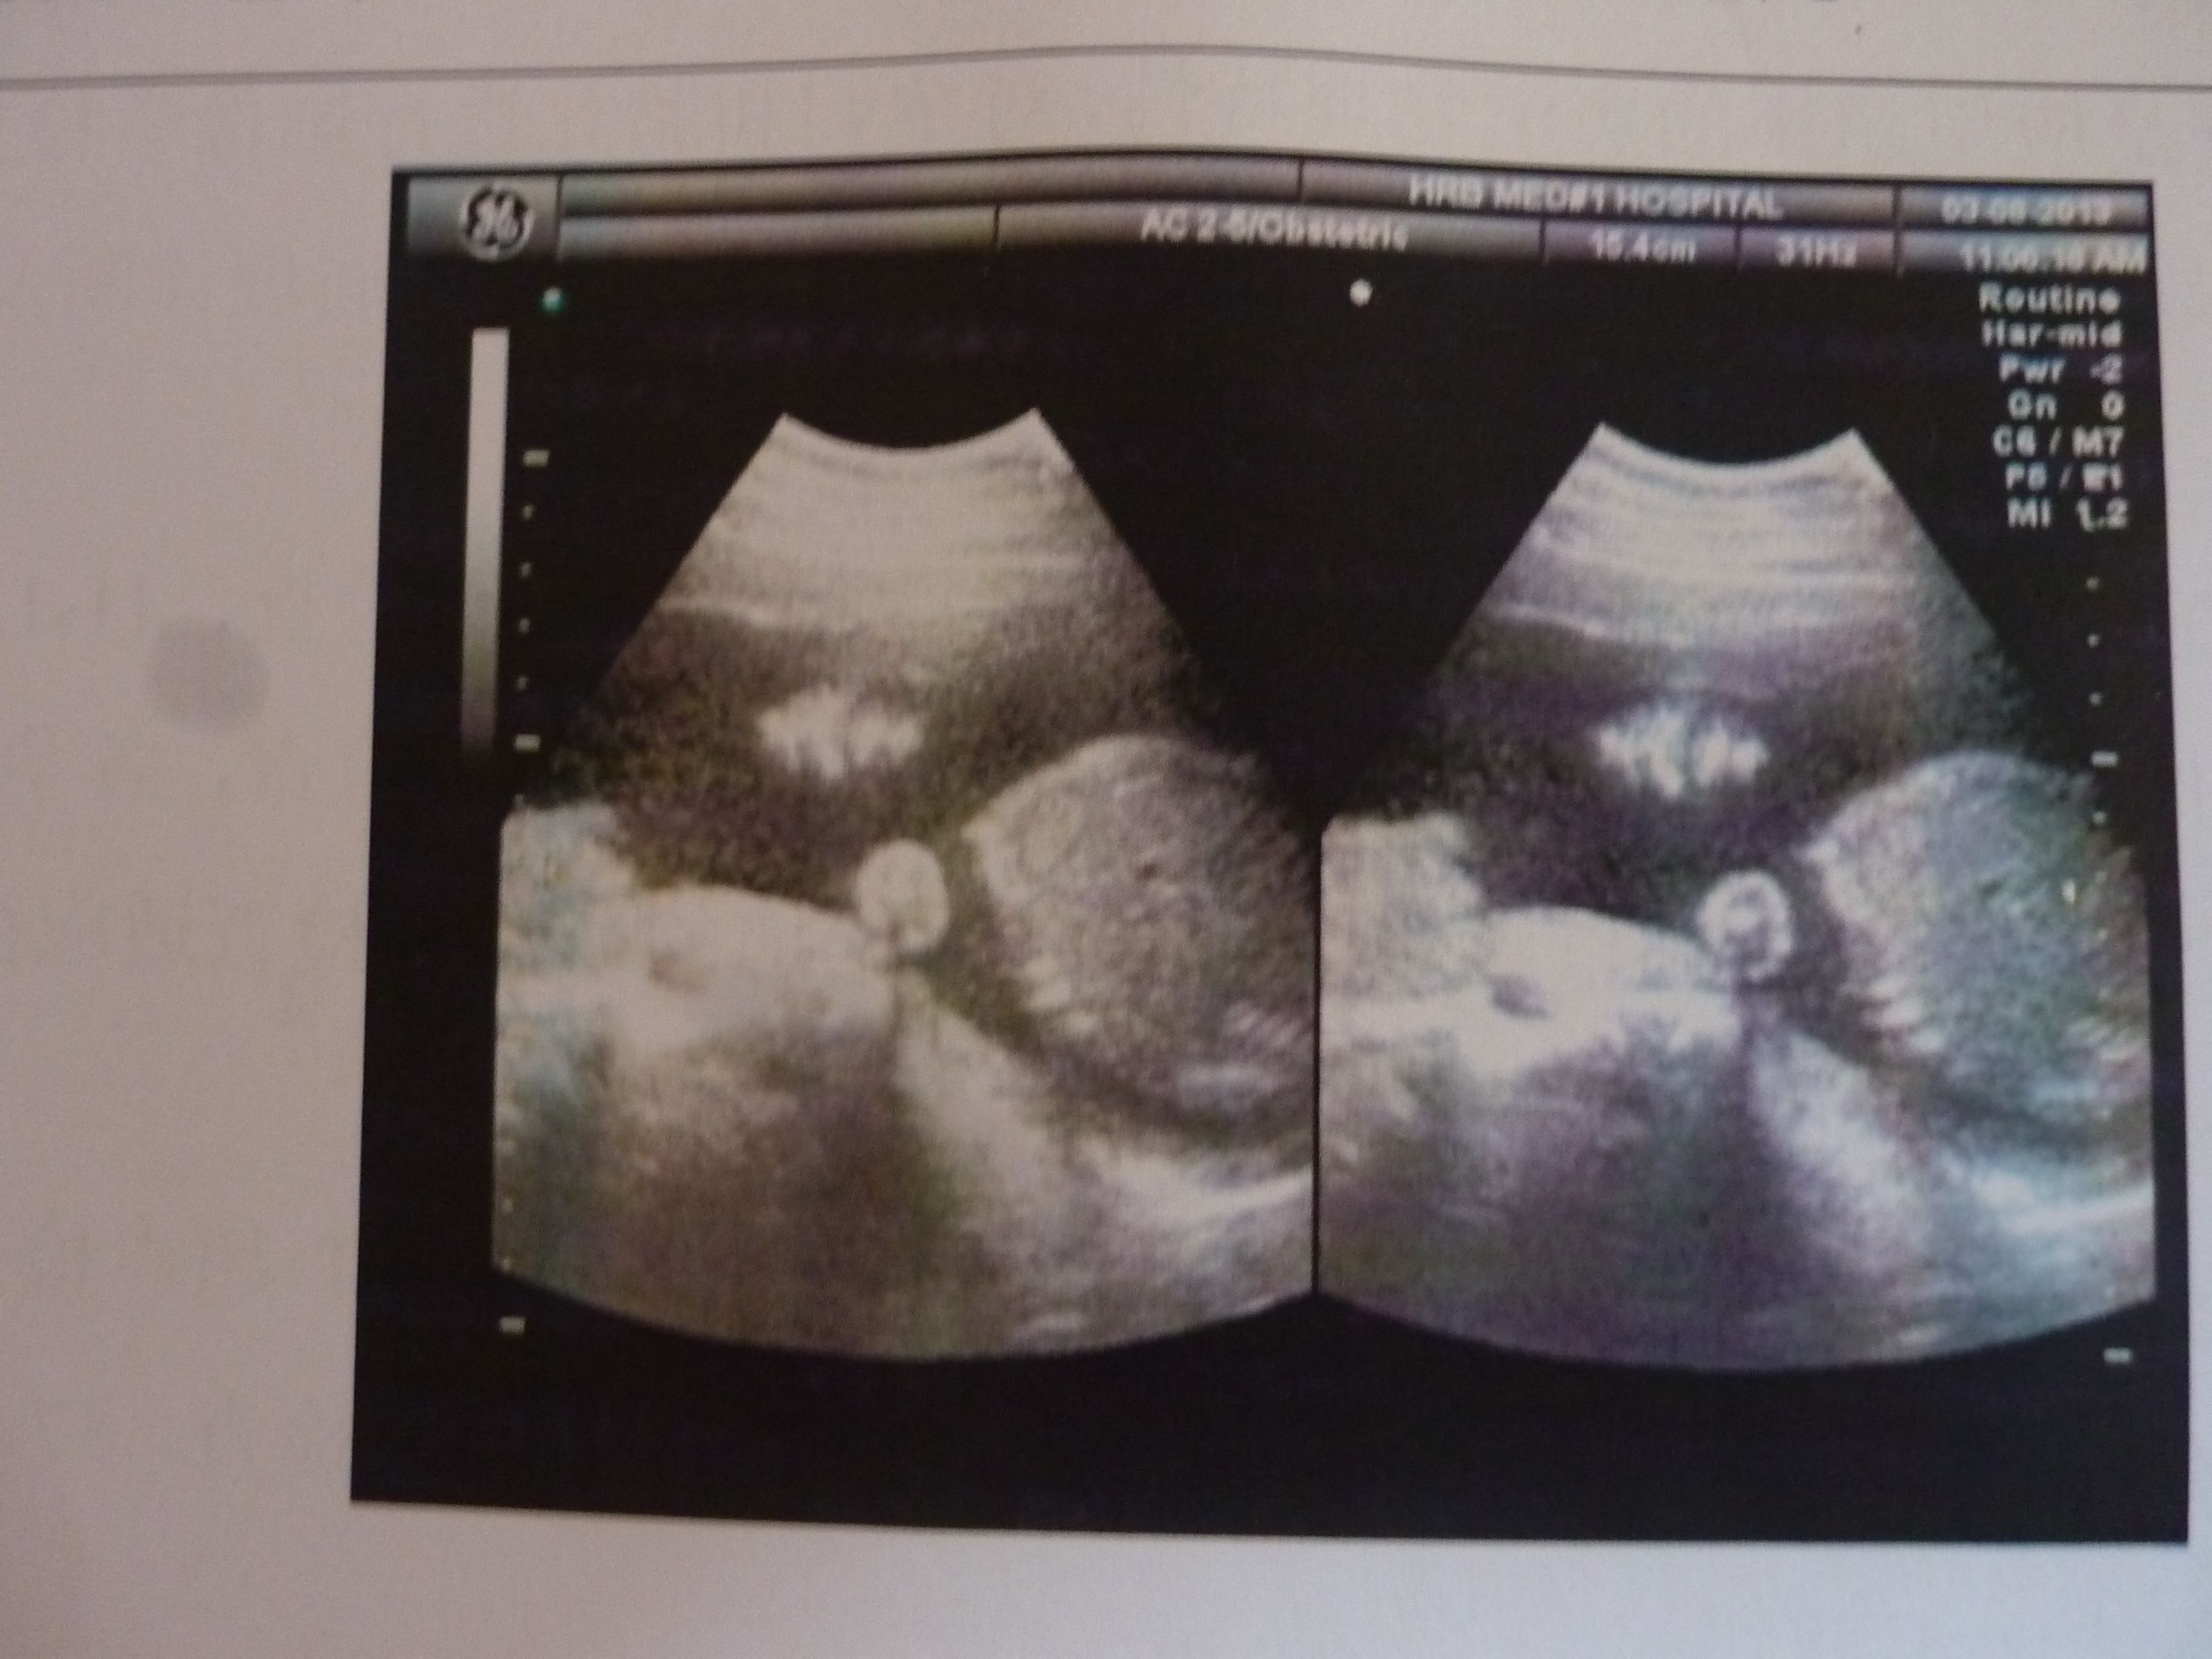 孕3月男女胎儿个性藏得深，摸清B超这几个数据，胎儿就没啥秘密了 - 百度宝宝知道